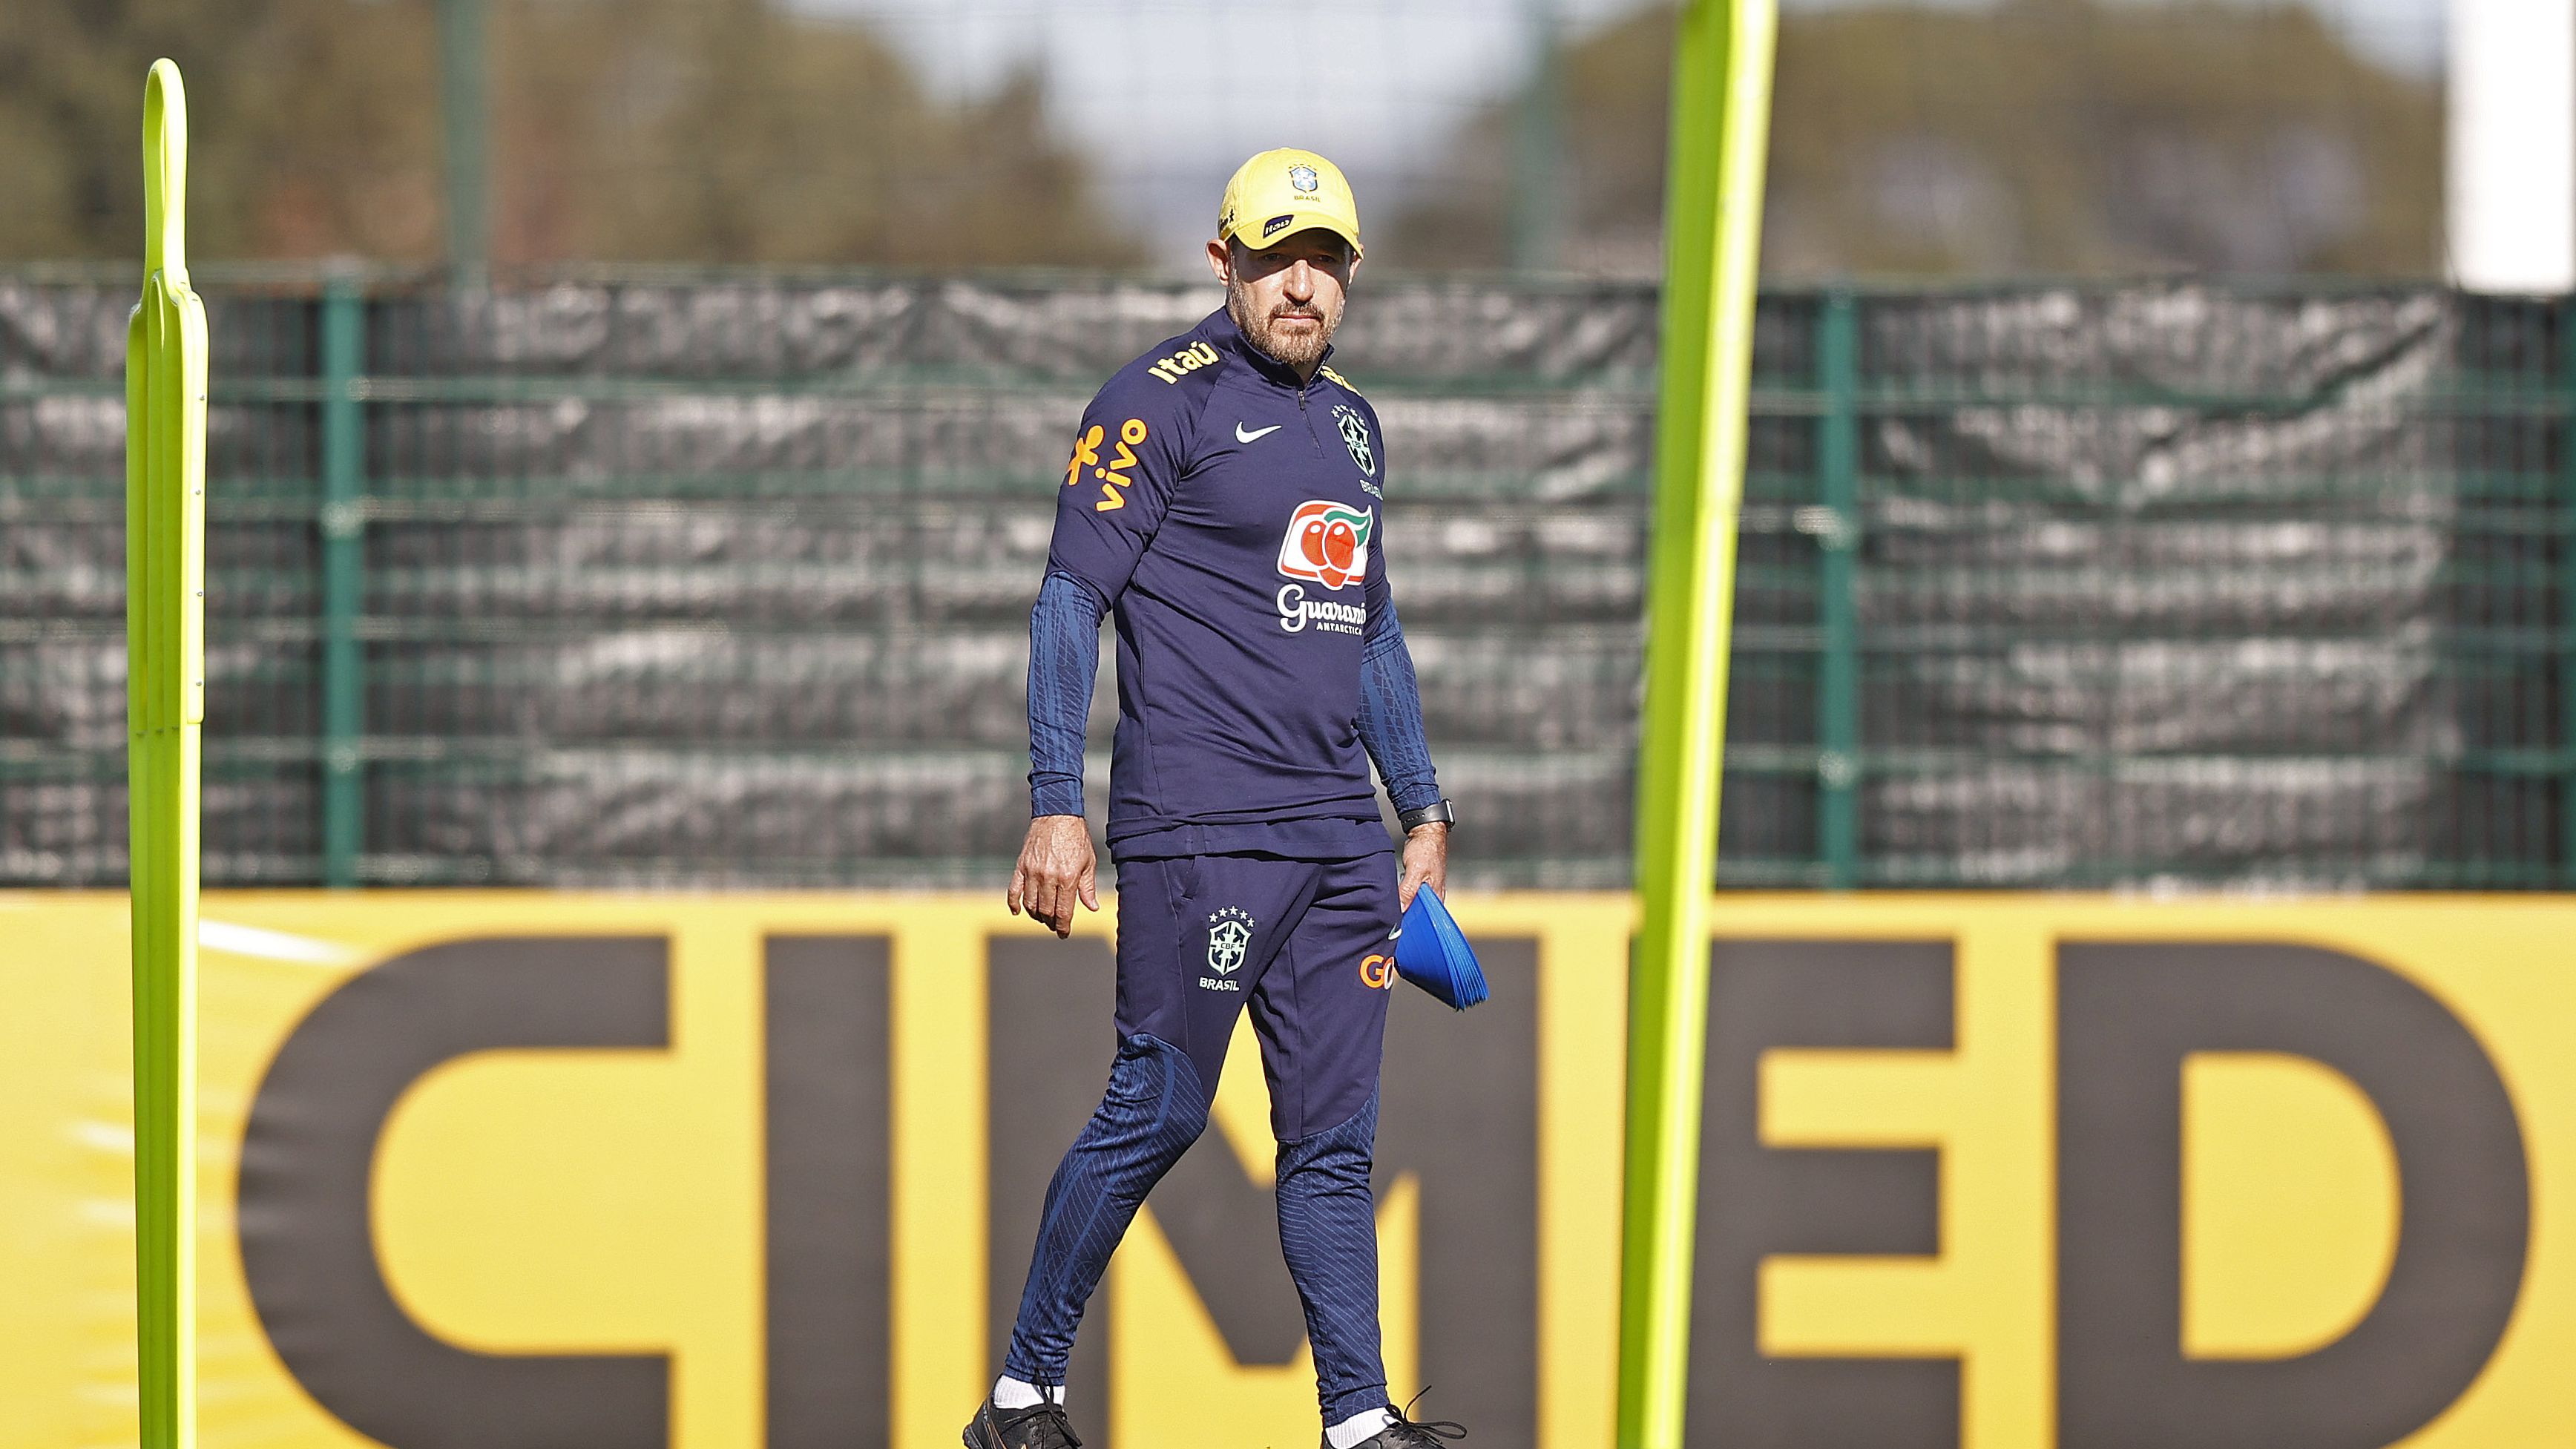 Ramon comandando treino da Seleção Brasileira (Crédito: Getty Images)